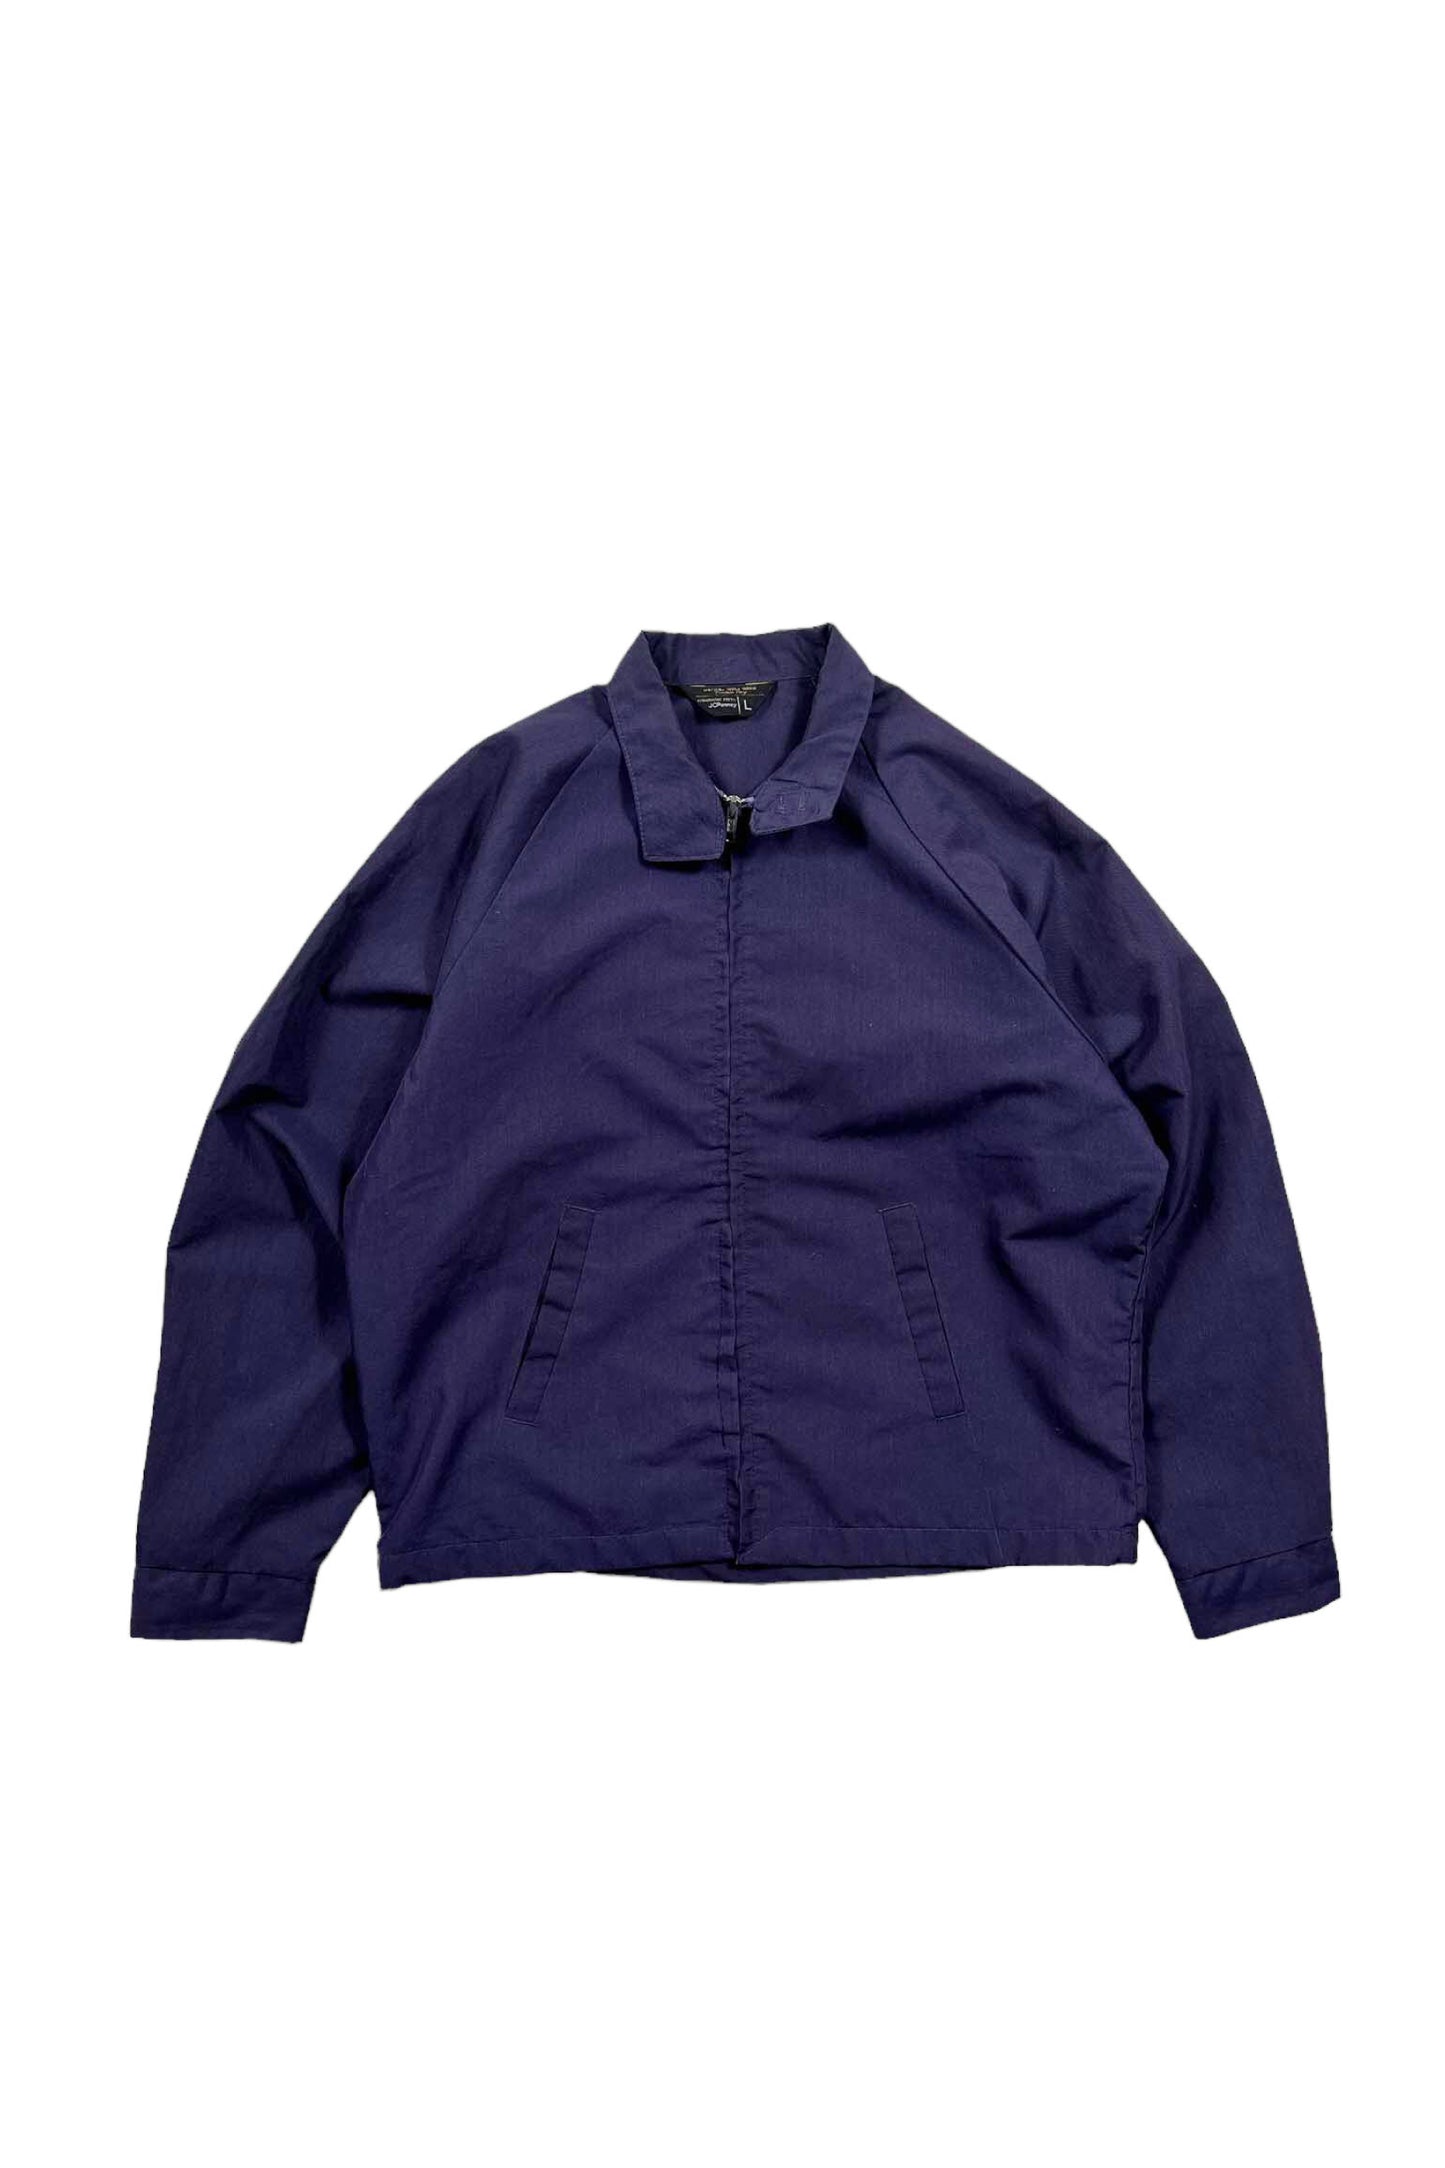 70's 80's JC Penney jacket